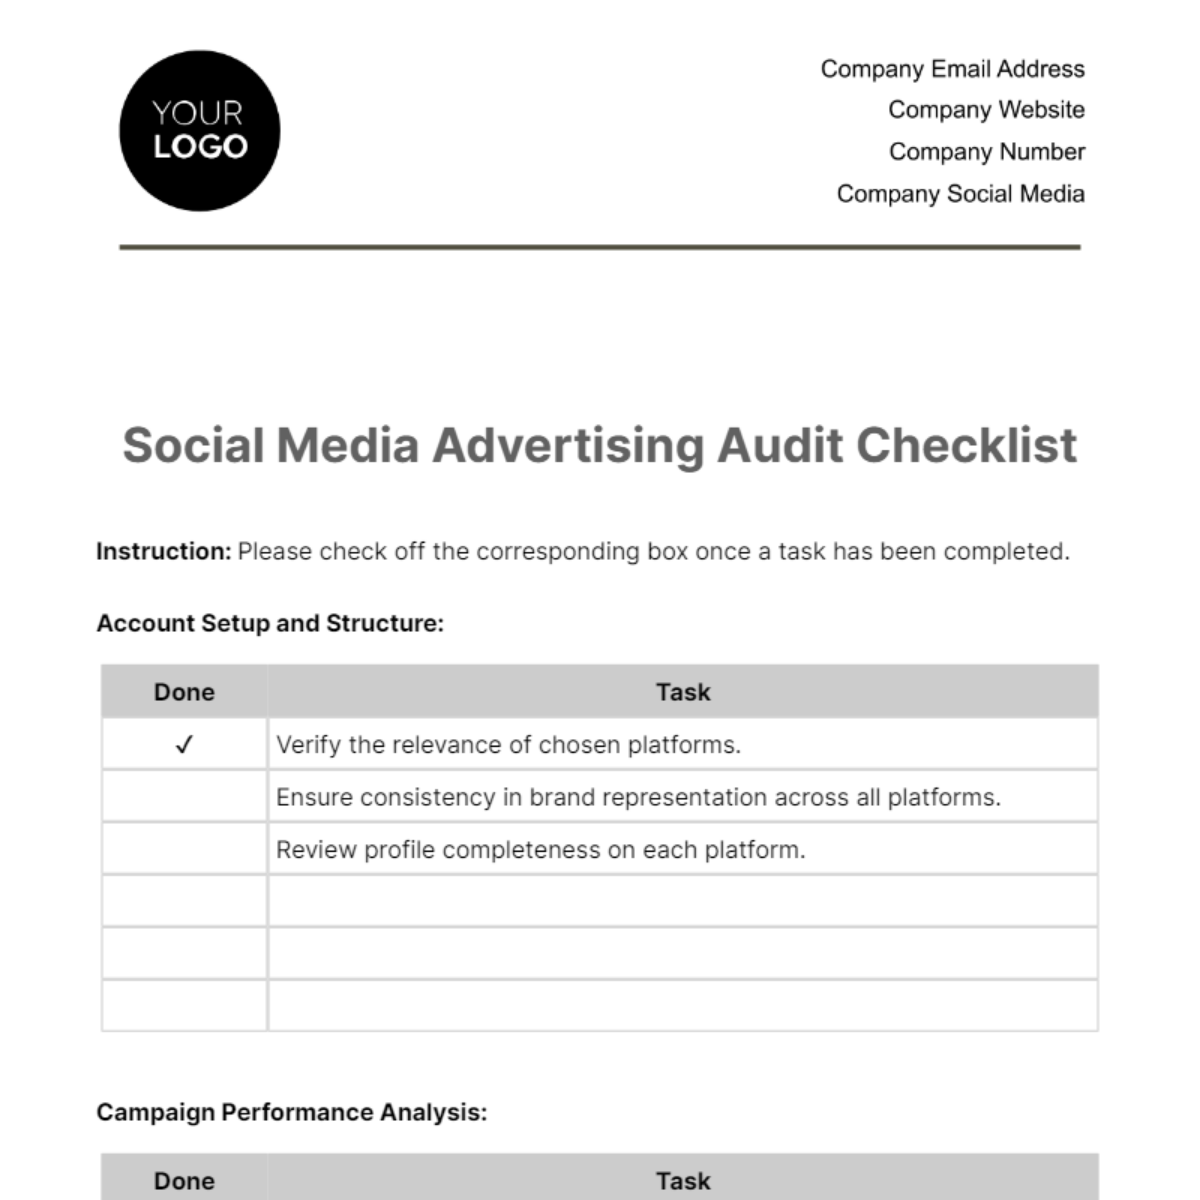 Social Media Advertising Audit Checklist Template